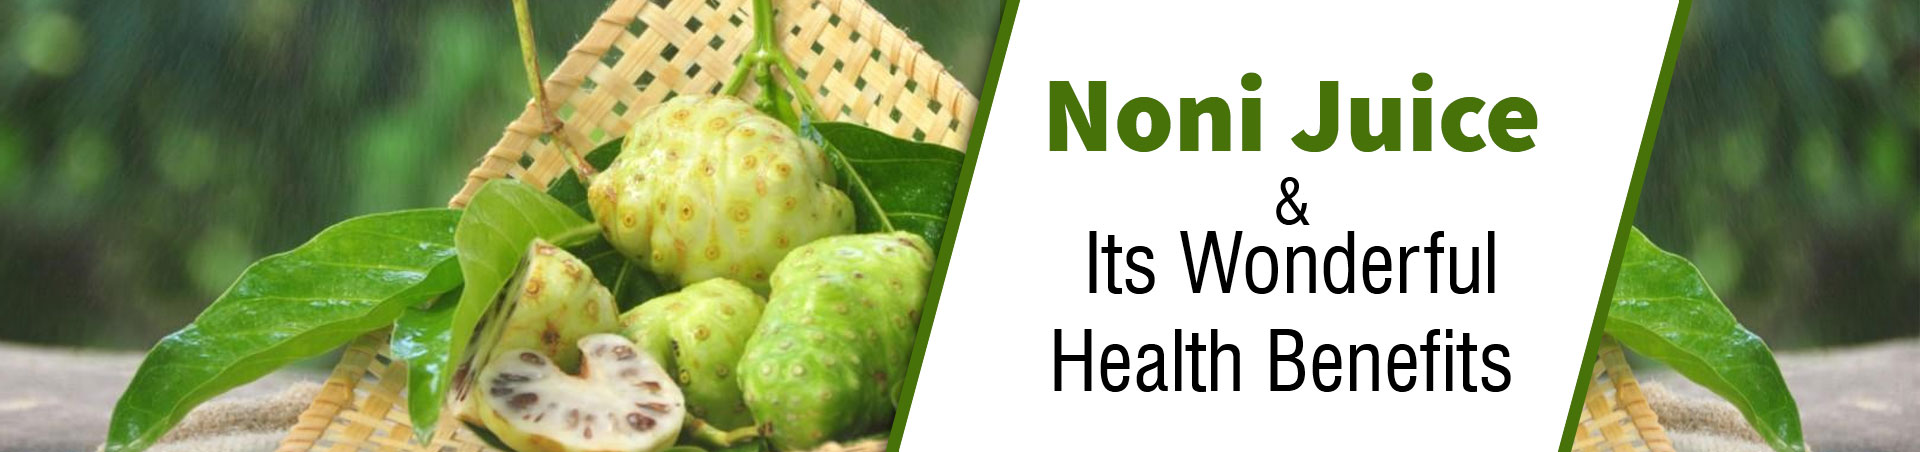 Noni Juice and Its Wonderful Health Benefits